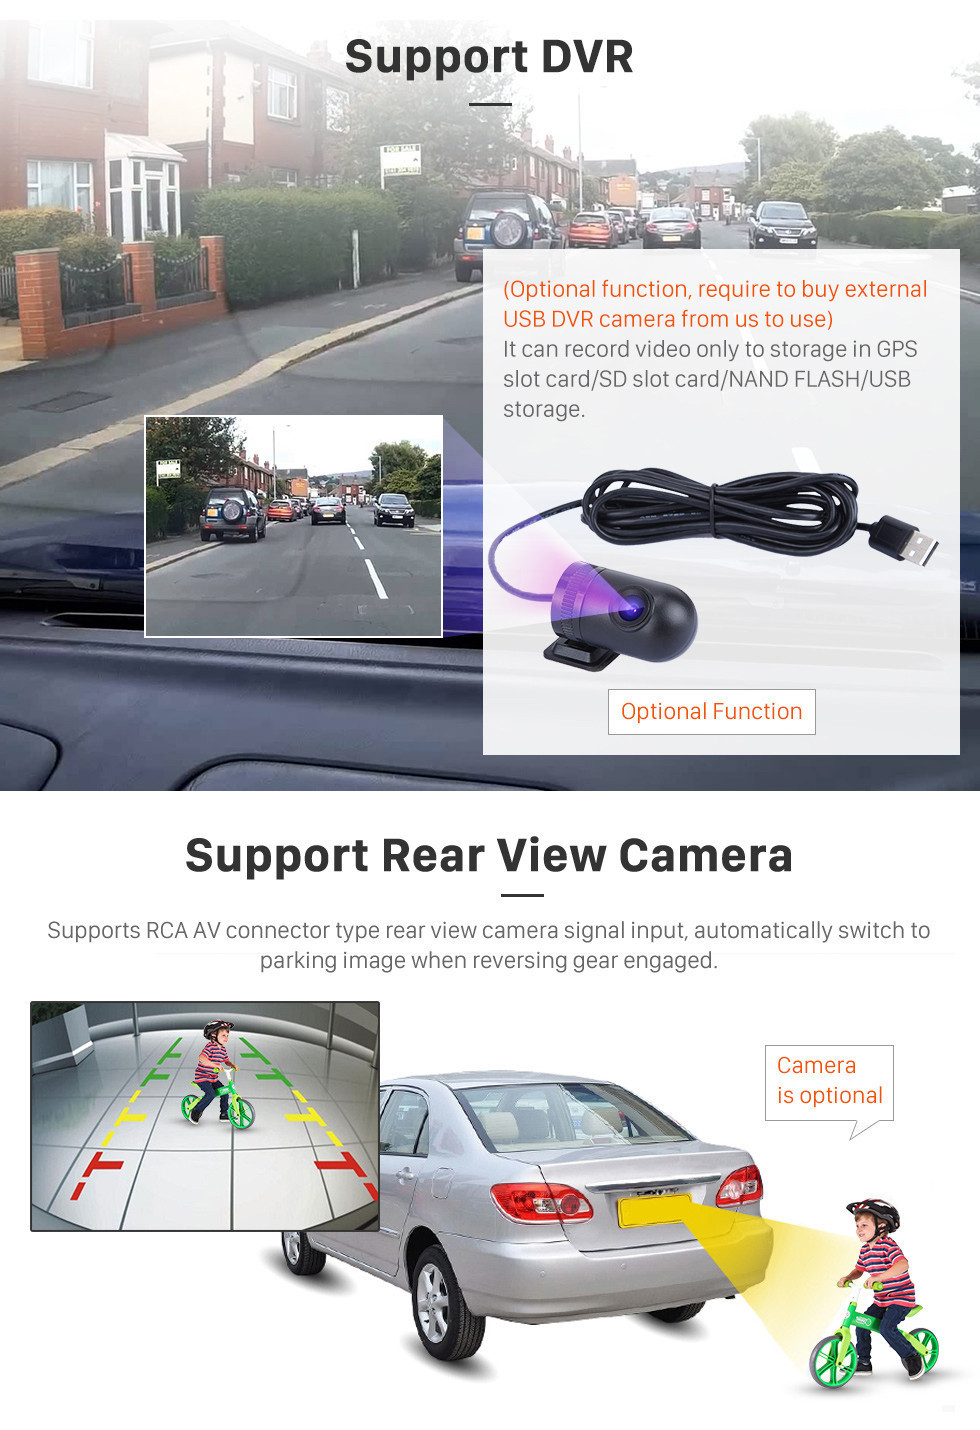 Seicane OEM 9 pouces Android 11.0 Radio pour 2018-2019 Chevrolet Chevrolet Spark Bluetooth Wifi HD Écran tactile Navigation GPS Carplay USB support TV numérique TPMS